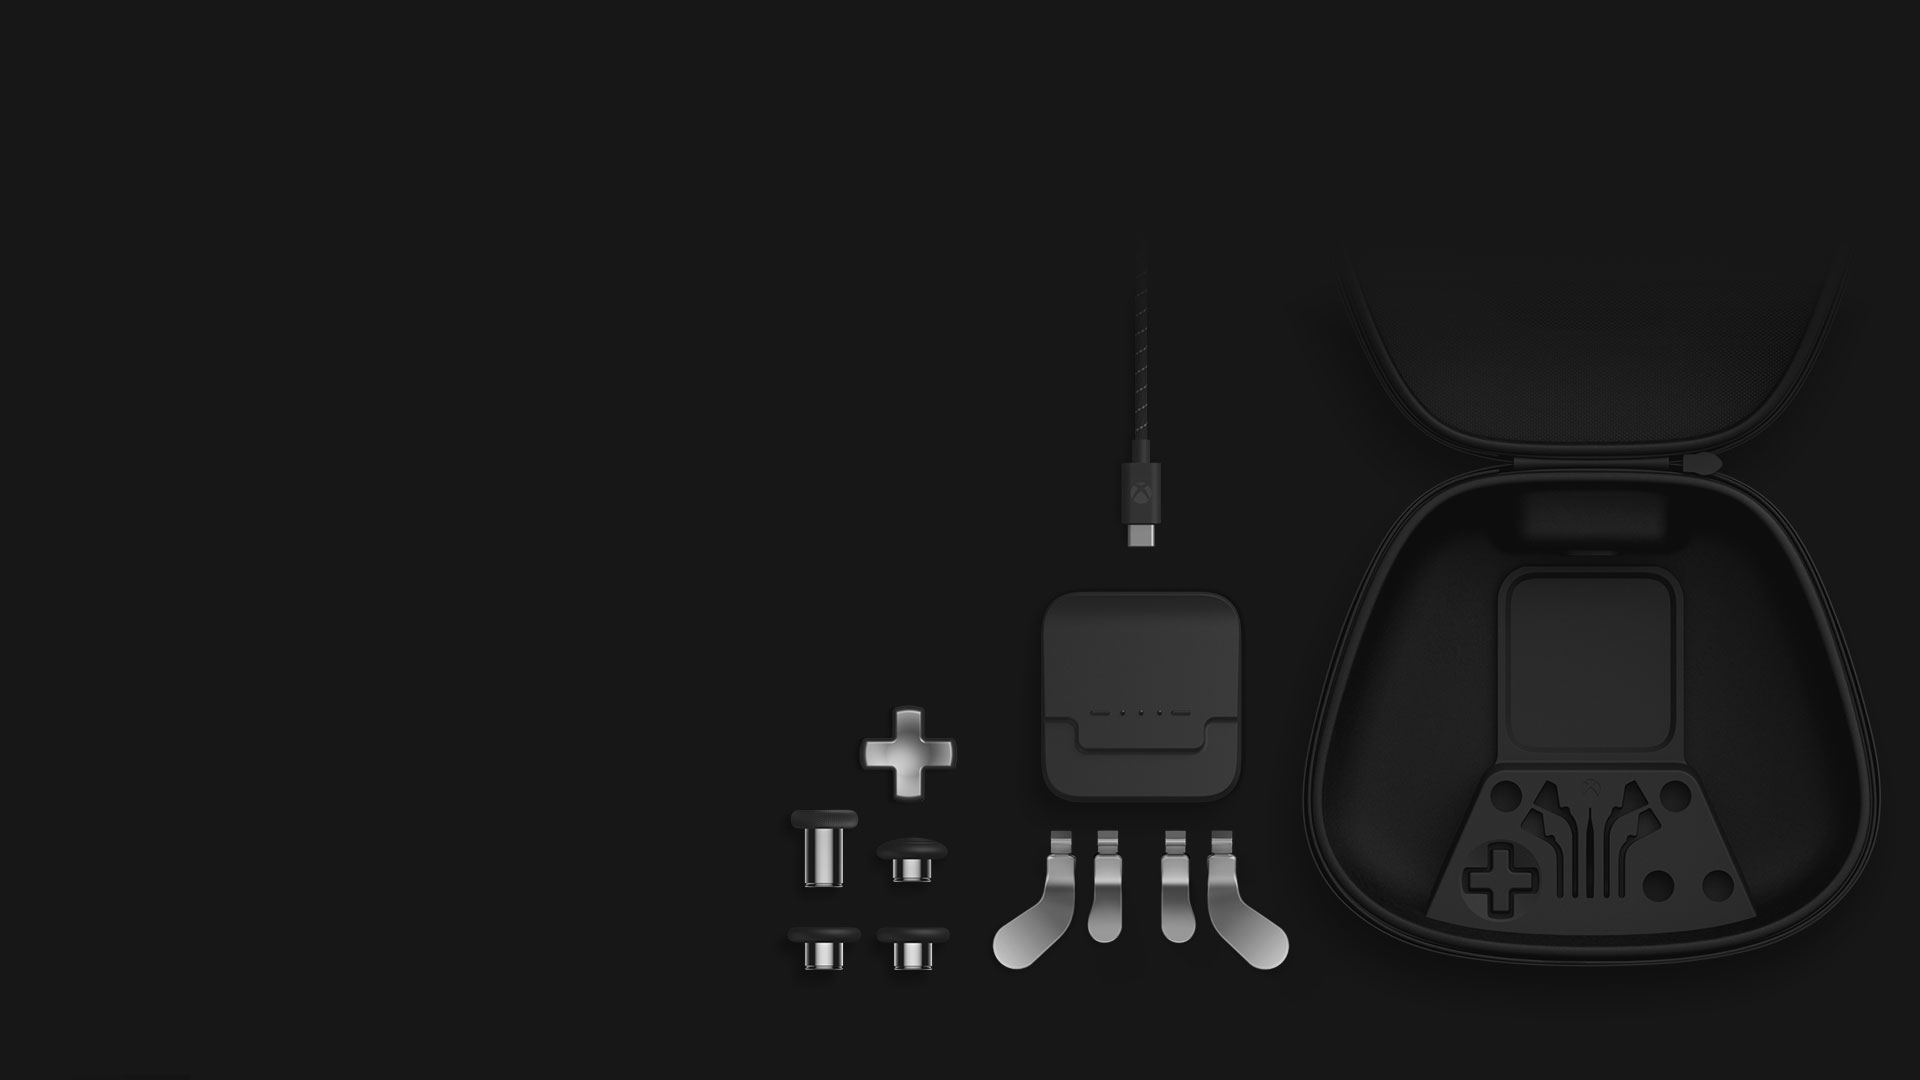 Isometrisch aanzicht van de inhoud van het Complete Component Pack: duimsticks, navigatiepad, paddles, oplaadbasis, USB-C-kabel en draagtas.